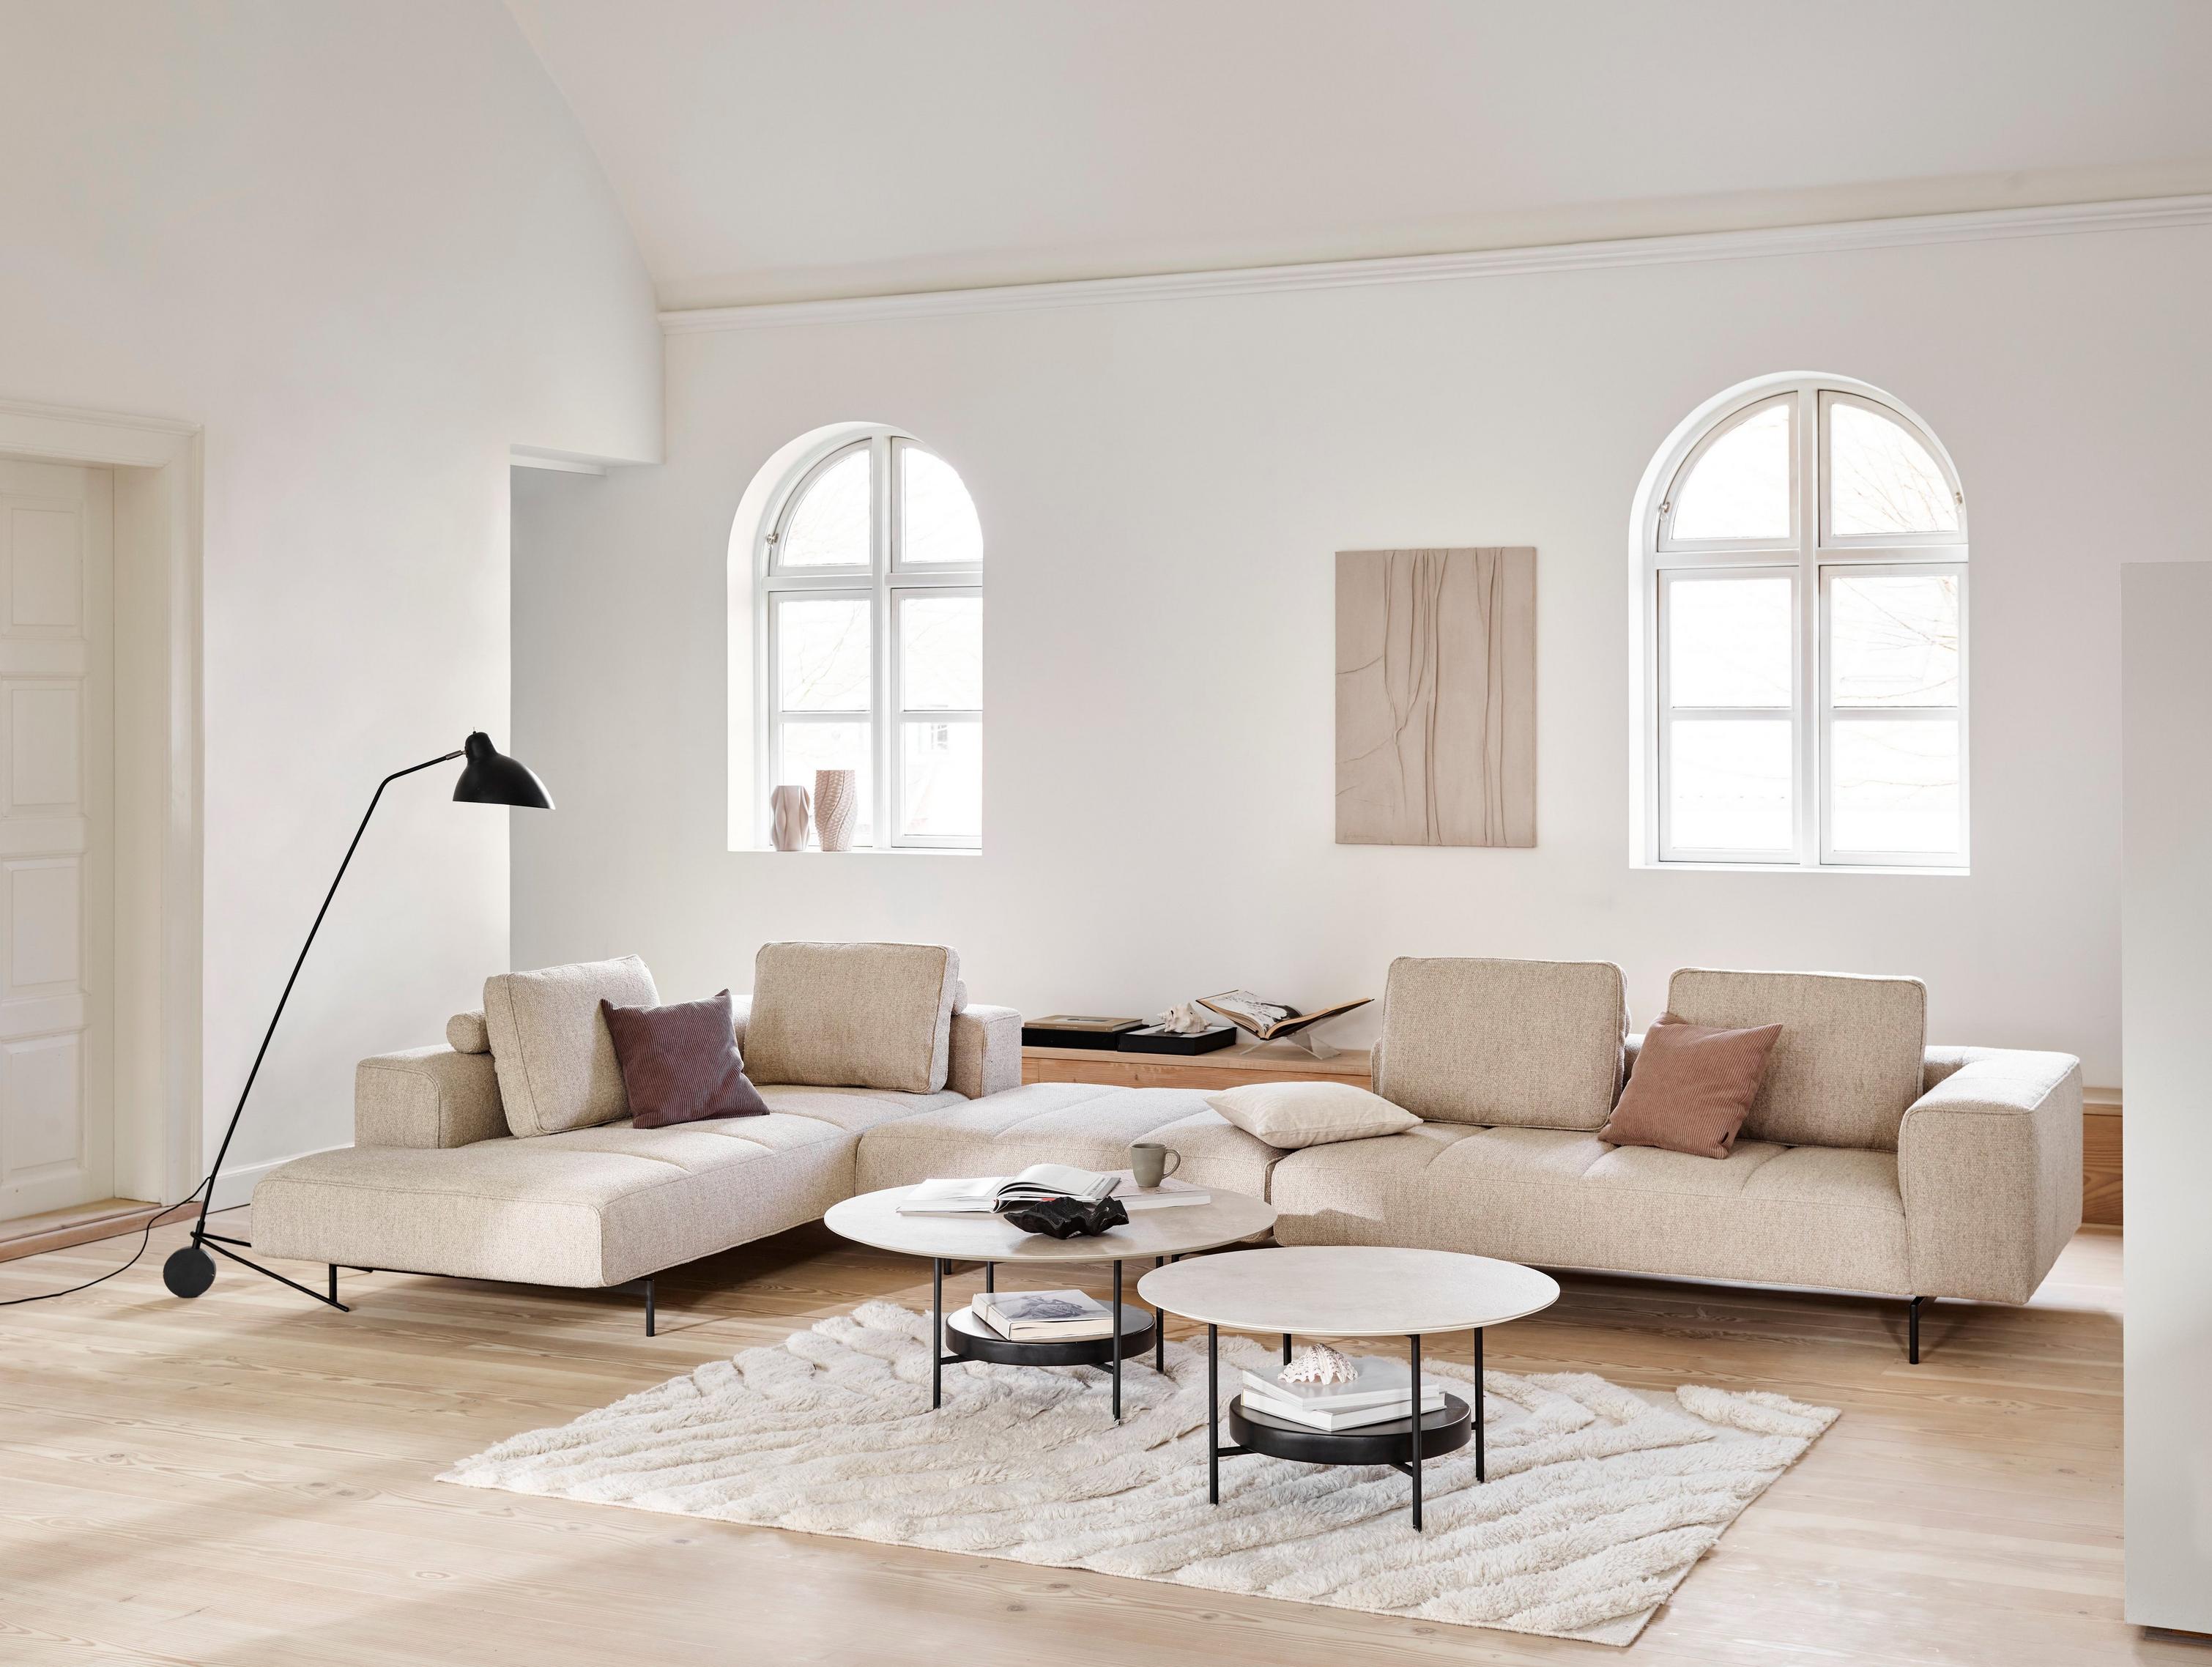 Угловой диван Amsterdam с модулем для отдыха с обивкой из ткани Lazio бежевого цвета и журнальный столик Madrid с покрытием из керамики пепельного цвета.